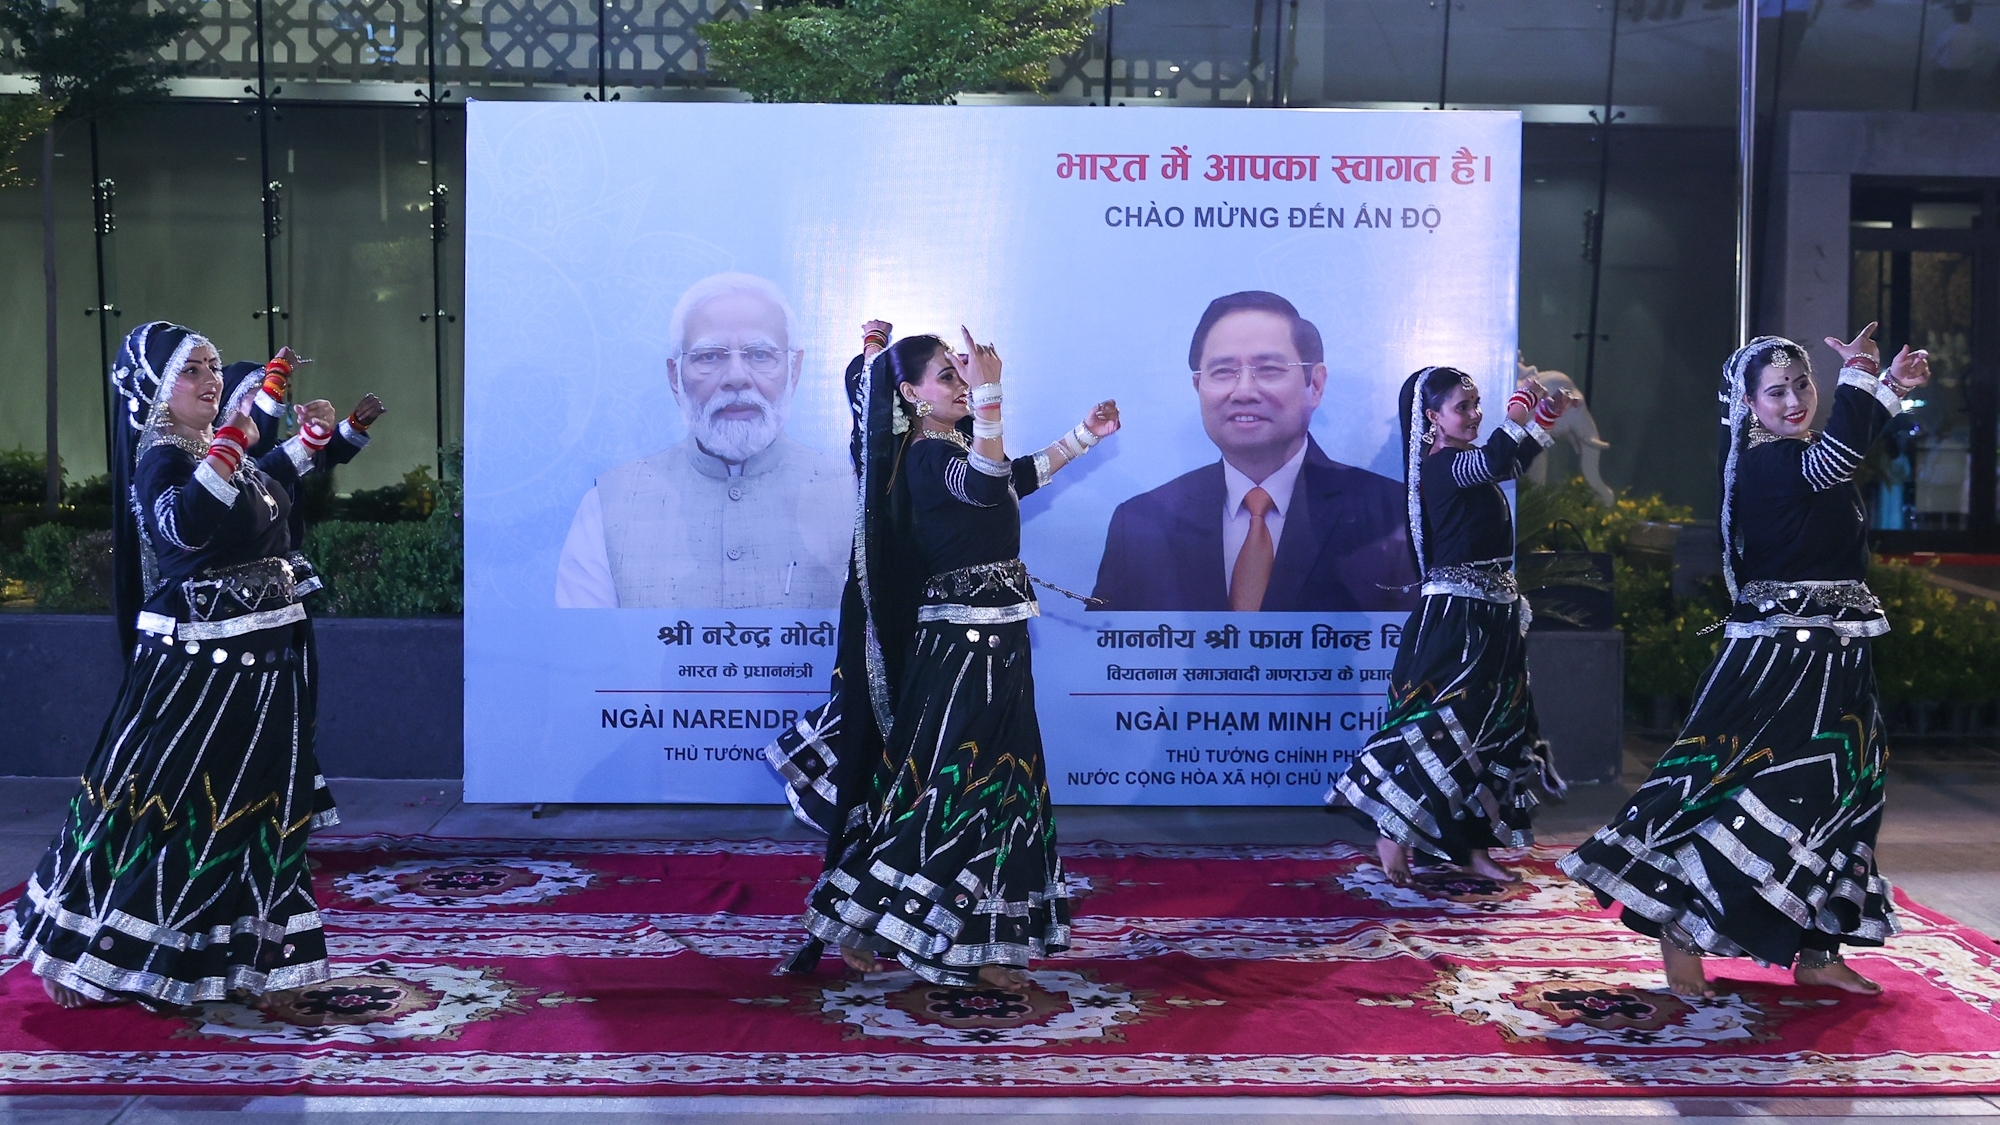 Ấn Độ chào đón Thủ tướng Phạm Minh Chính bằng điệu múa truyền thống